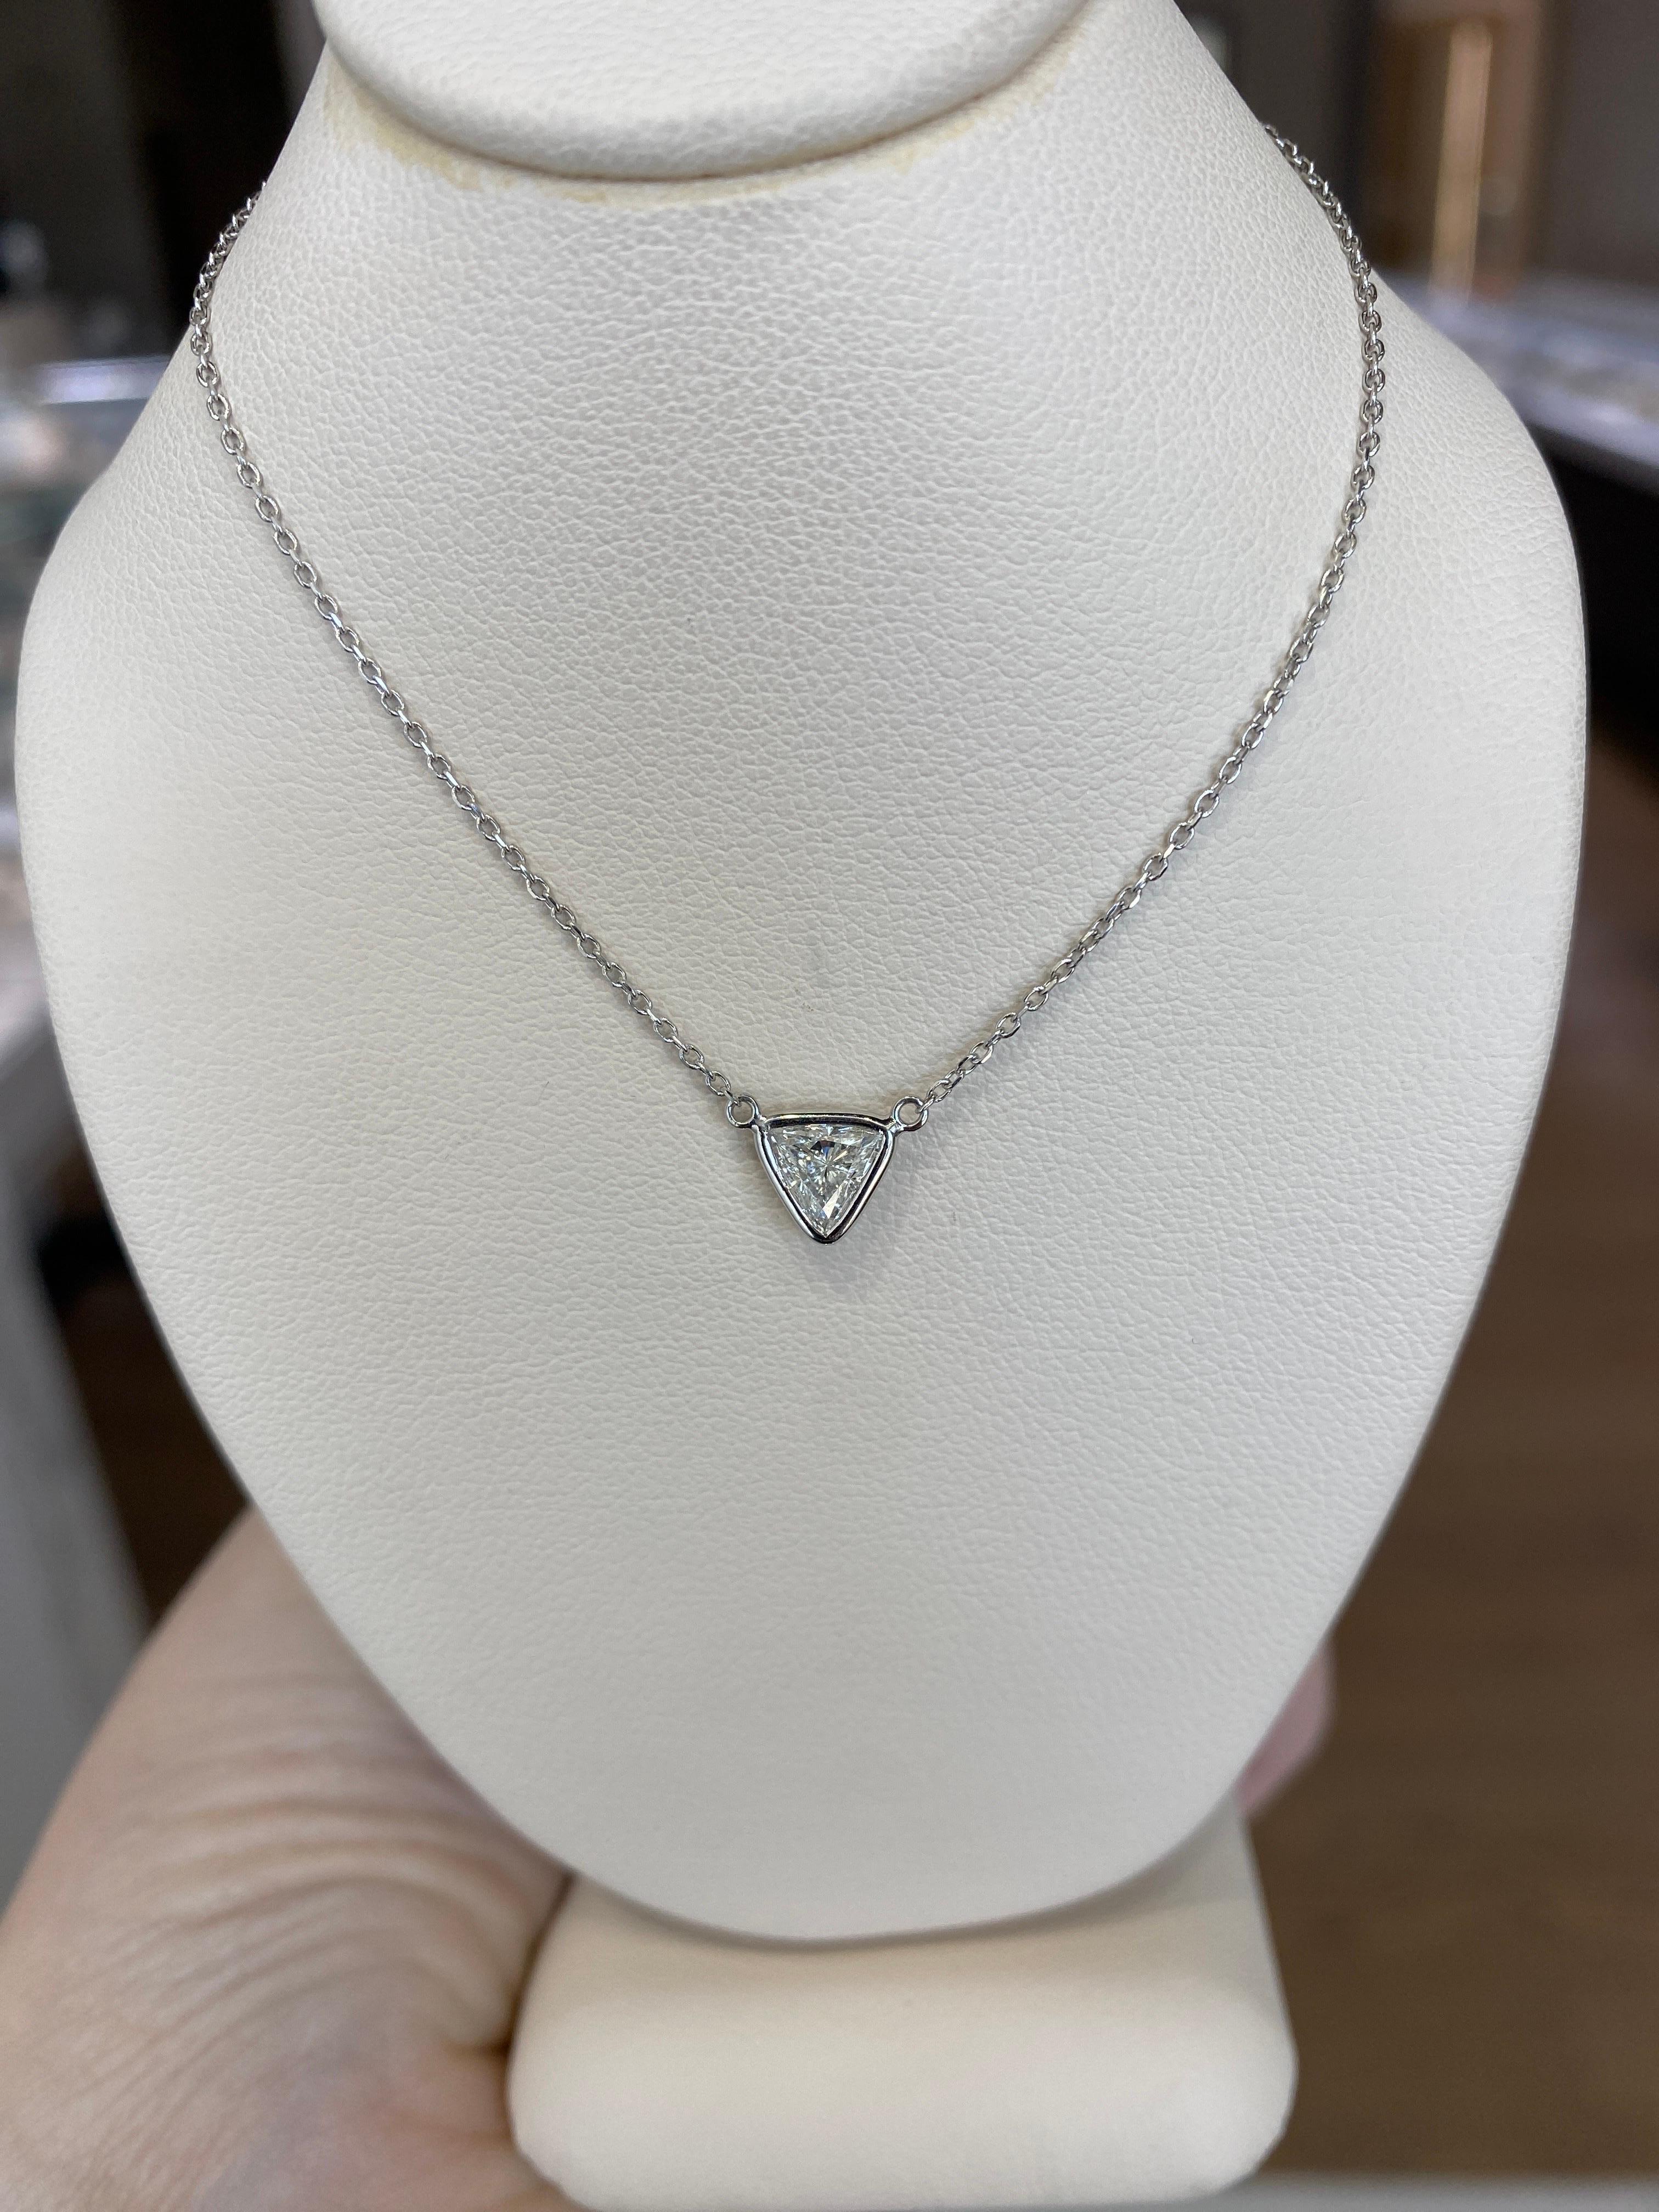 0.46 Carat Natural Trillion Cut Diamond Pendant Necklace, 14k White Gold For Sale 10